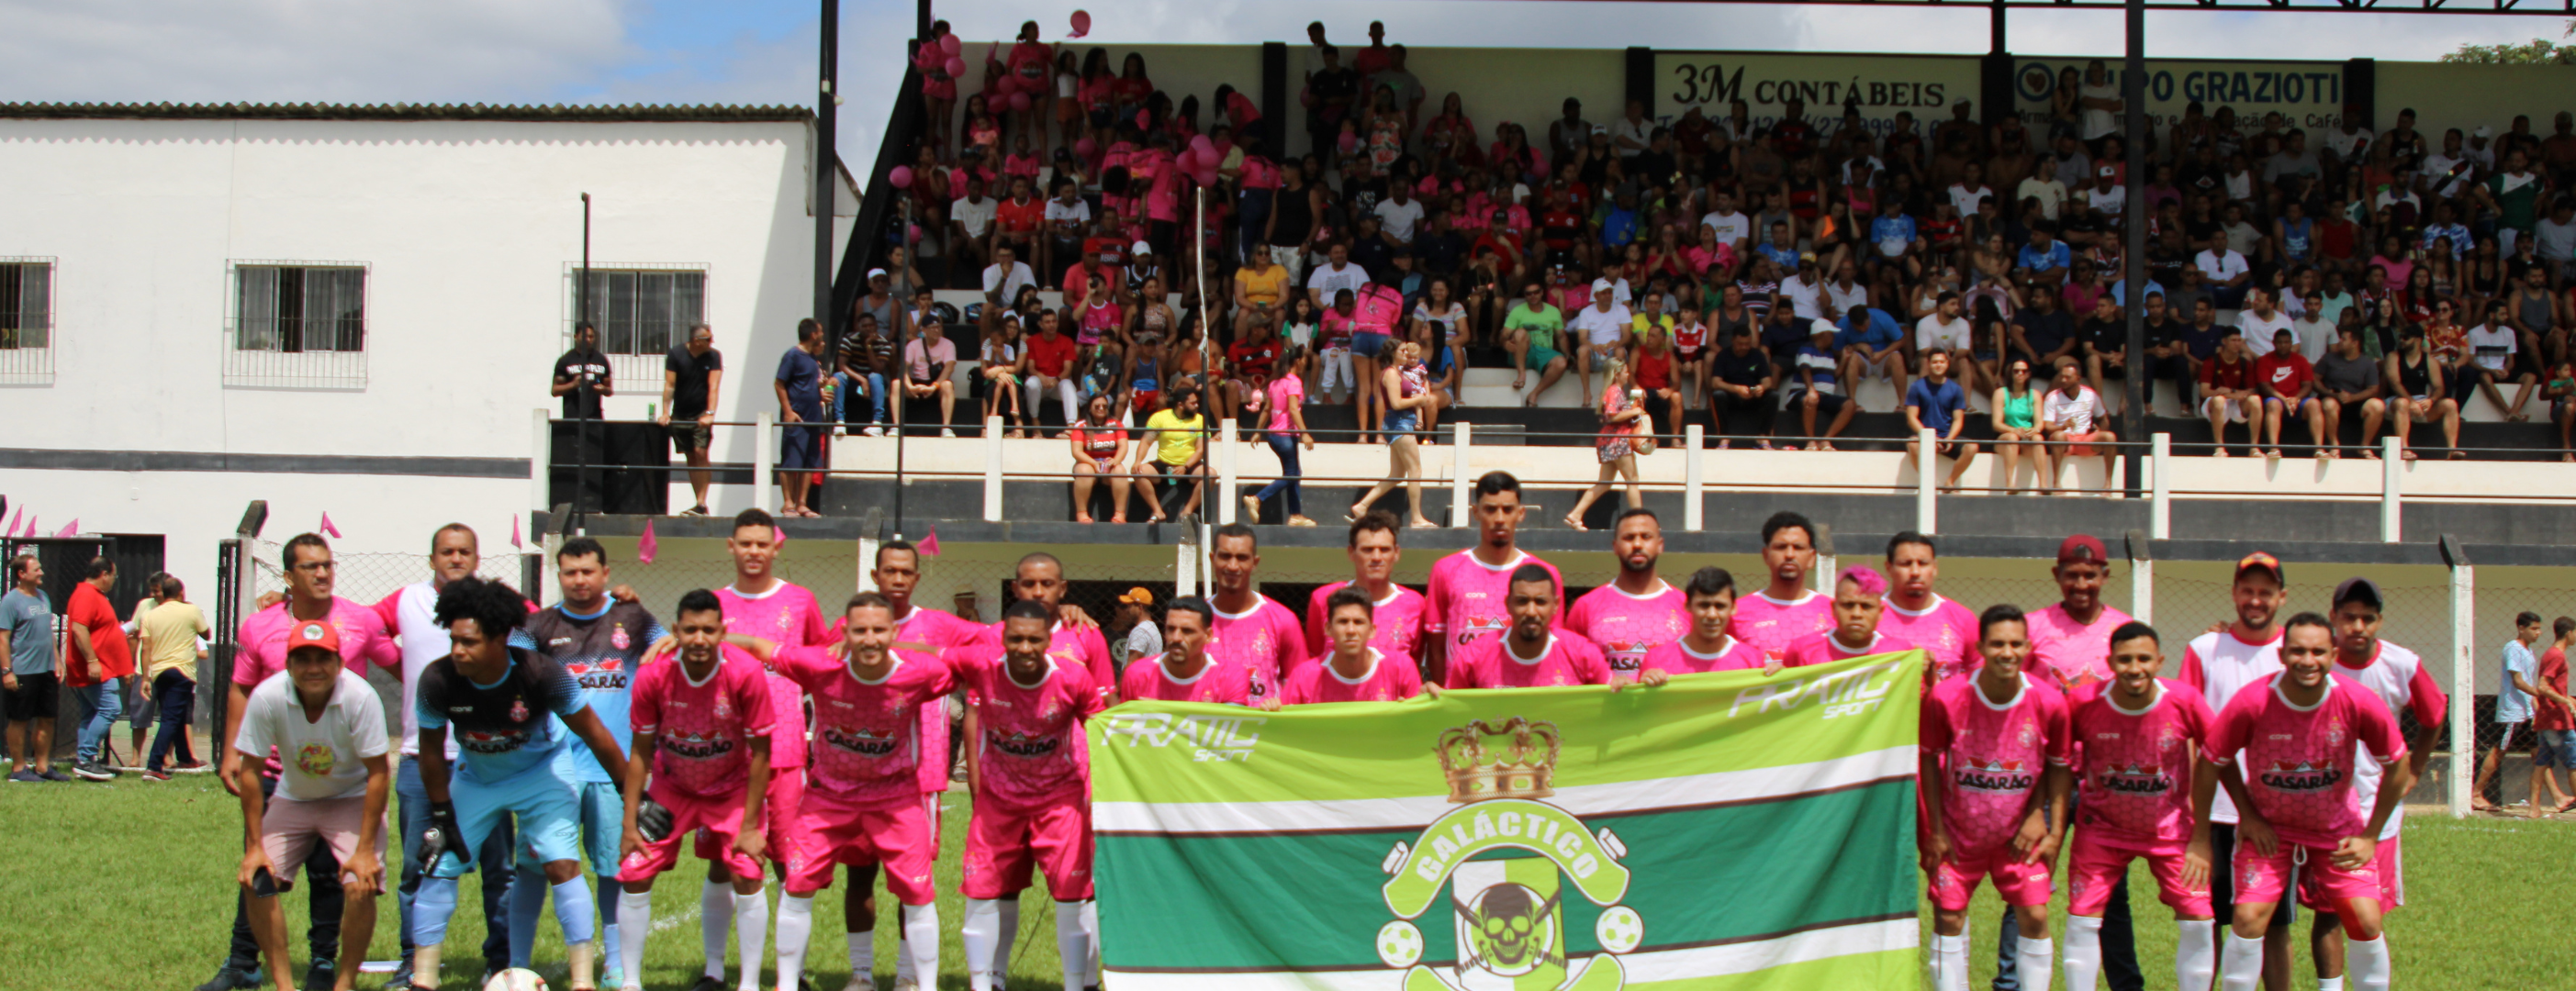 Secretaria de Esportes realiza com sucesso a final da Copa Mário Garcia